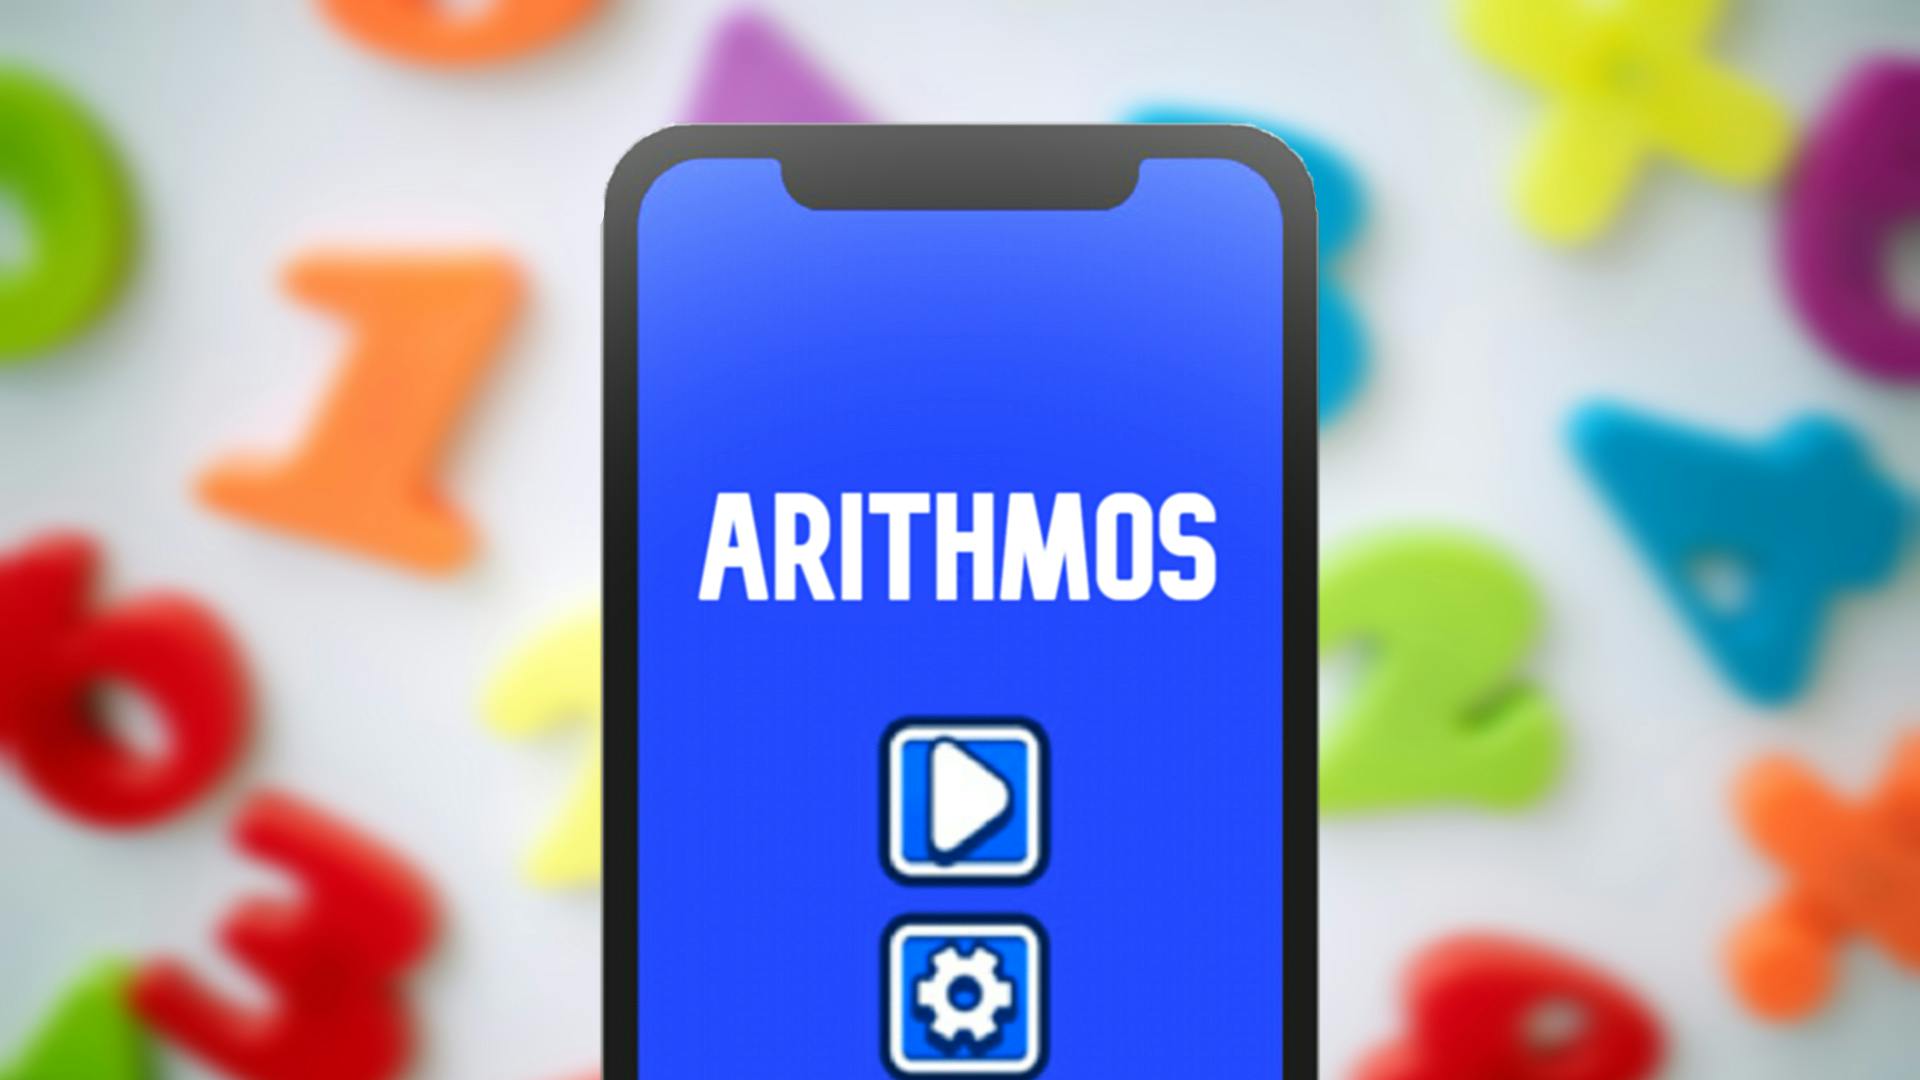 Arithmos